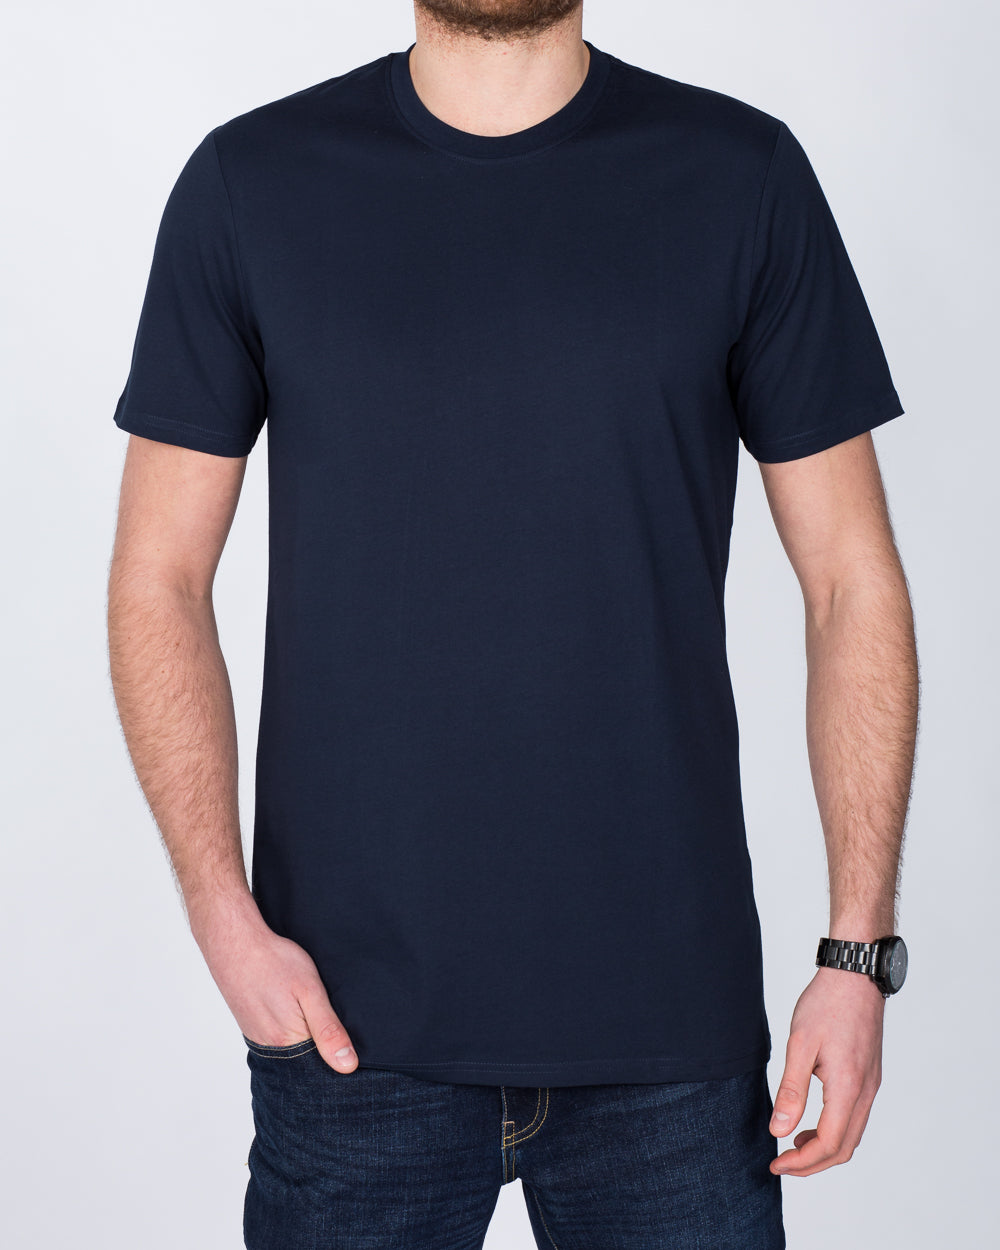 Girav Sydney Tall T-Shirt (navy)